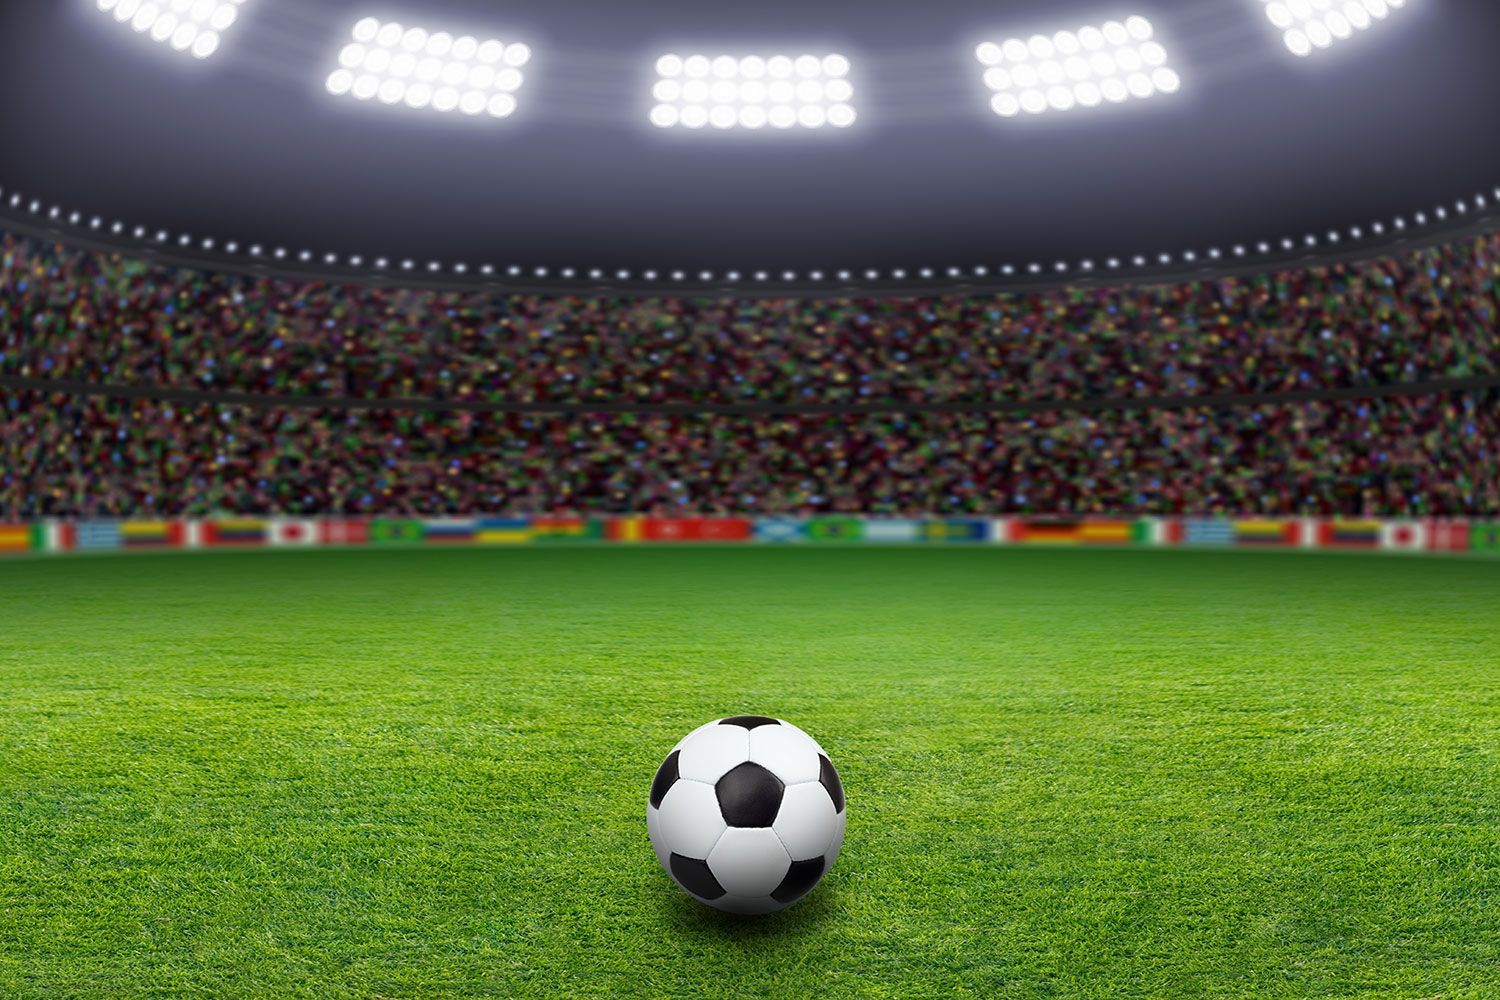 Soccer Stadium Wallpaper - Soccer Stadium - HD Wallpaper 